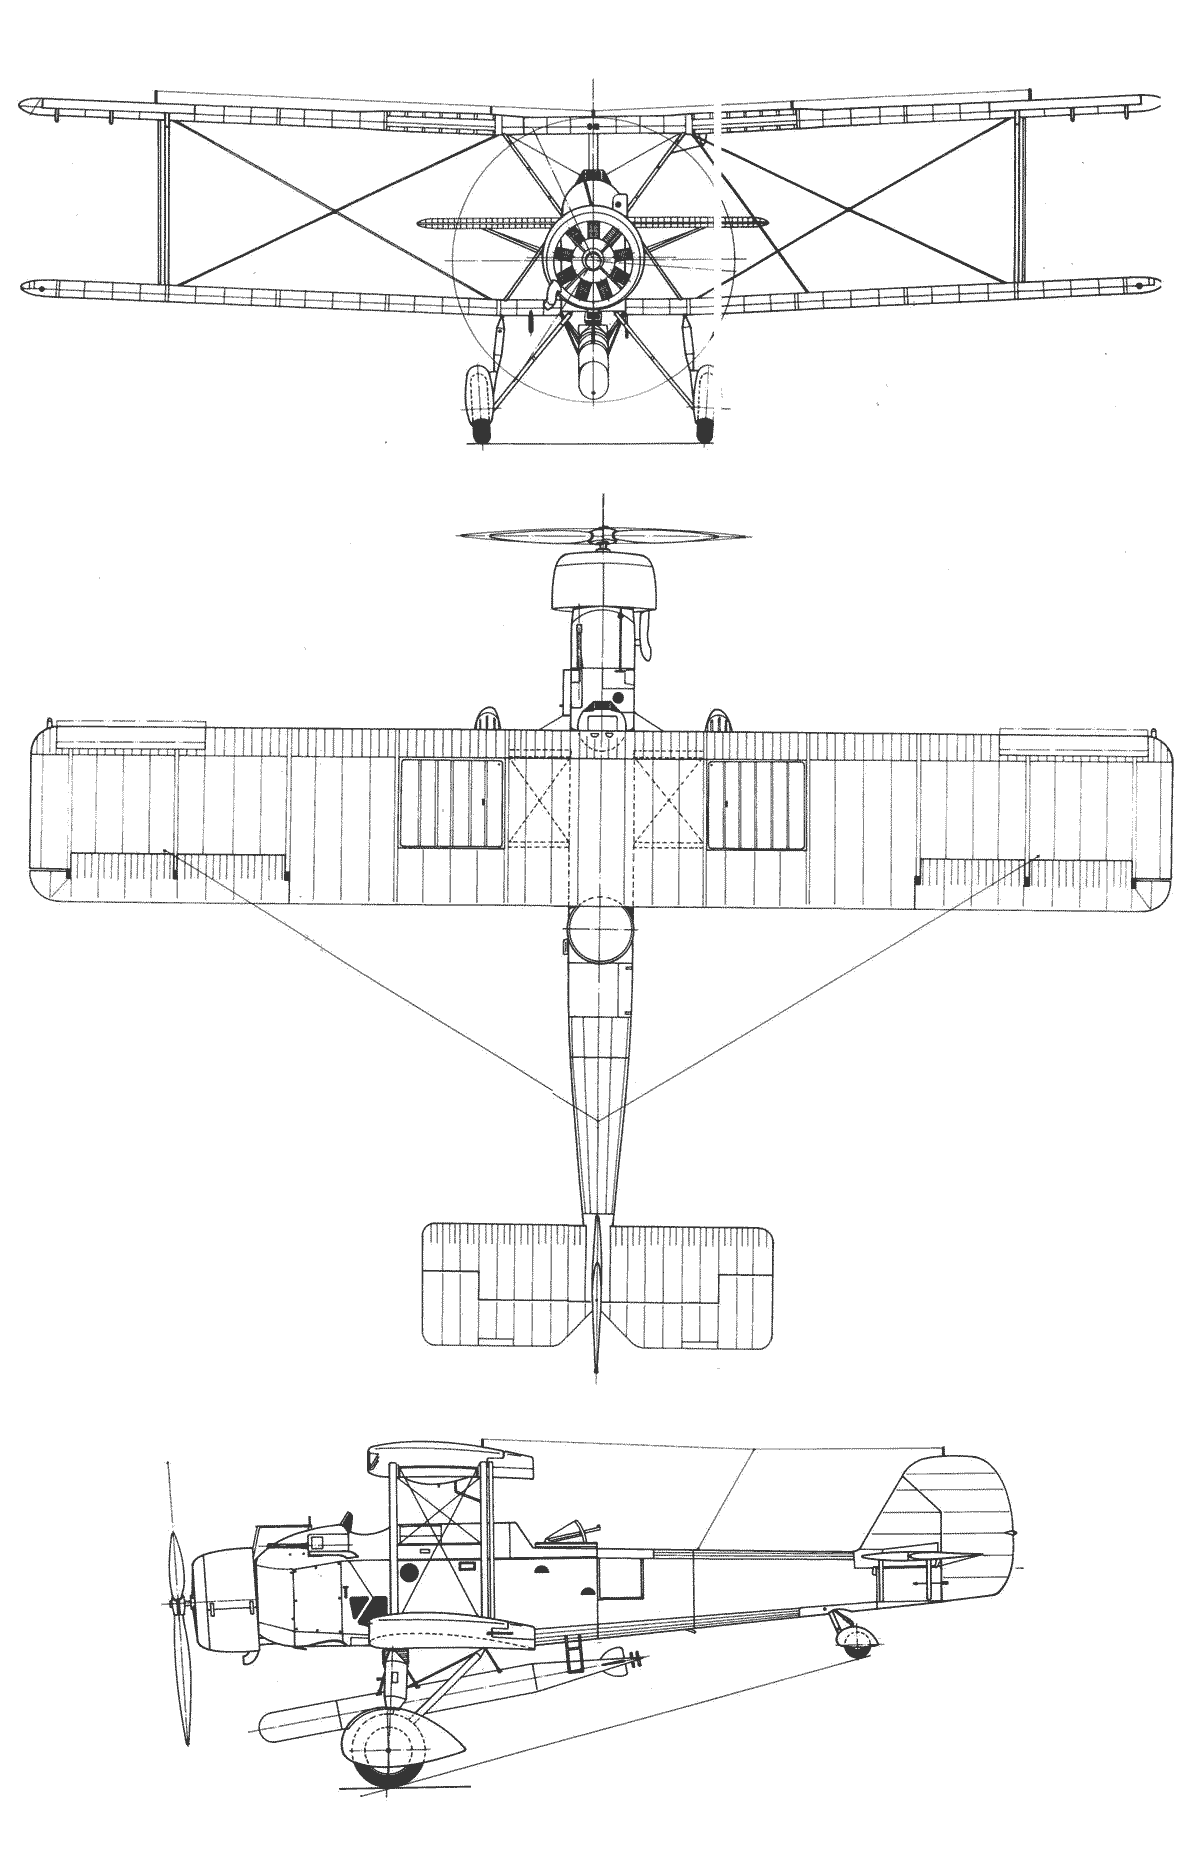 Vickers Vildebeest blueprint